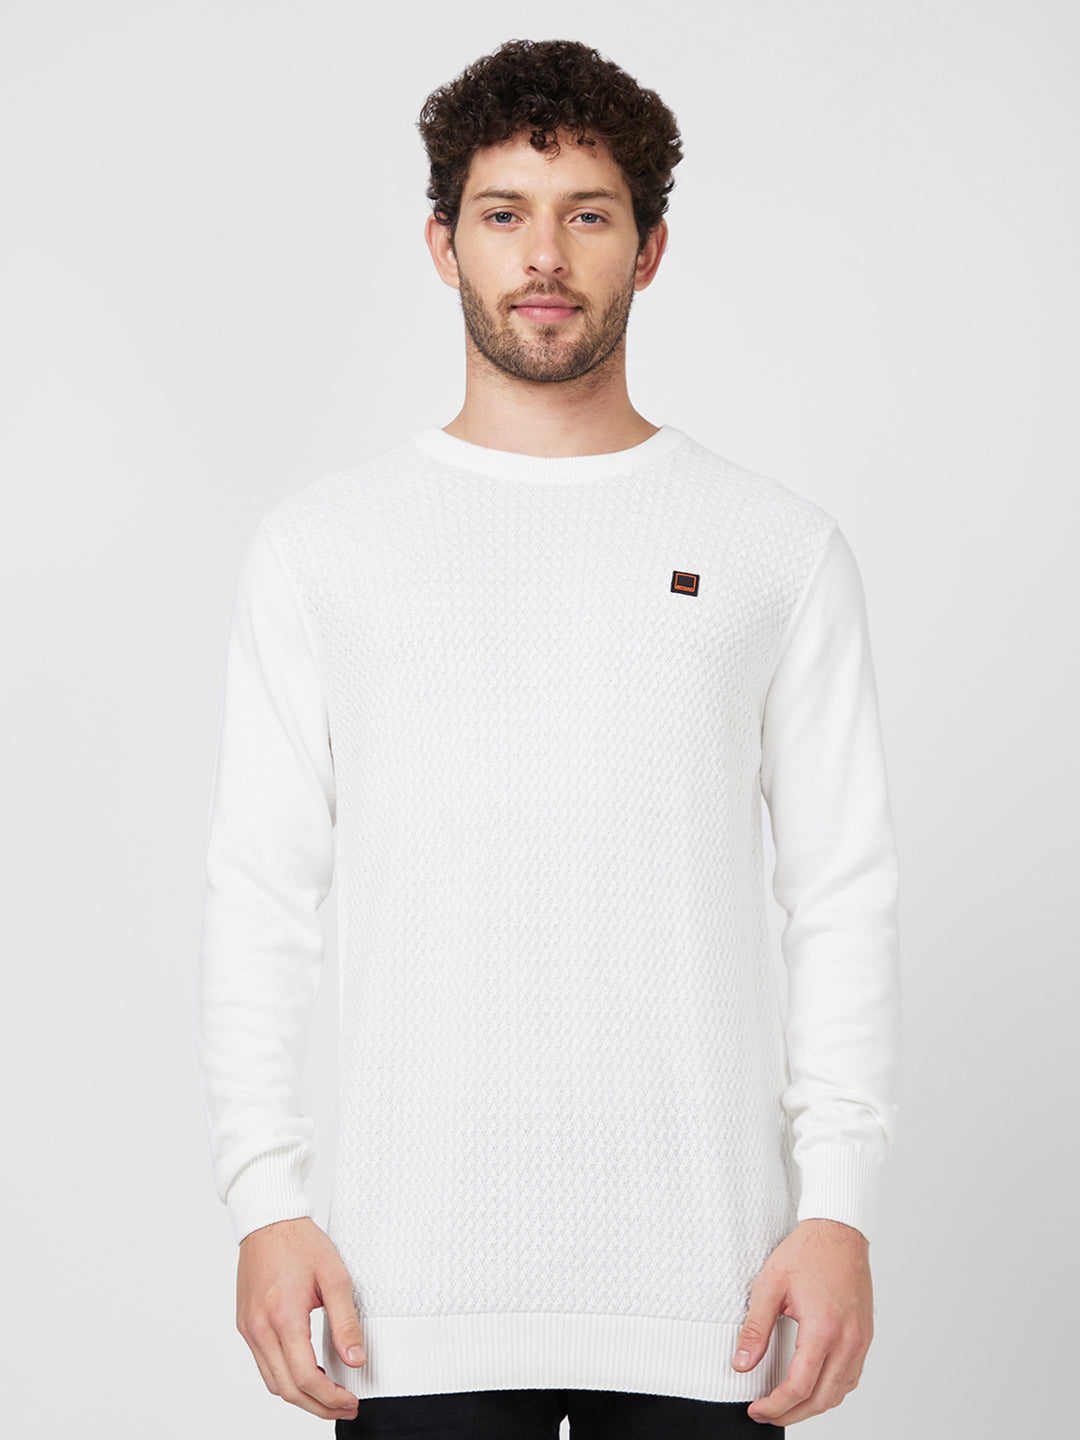 Spykar Full Sleeve Round Neck White Cotton Sweater For Men